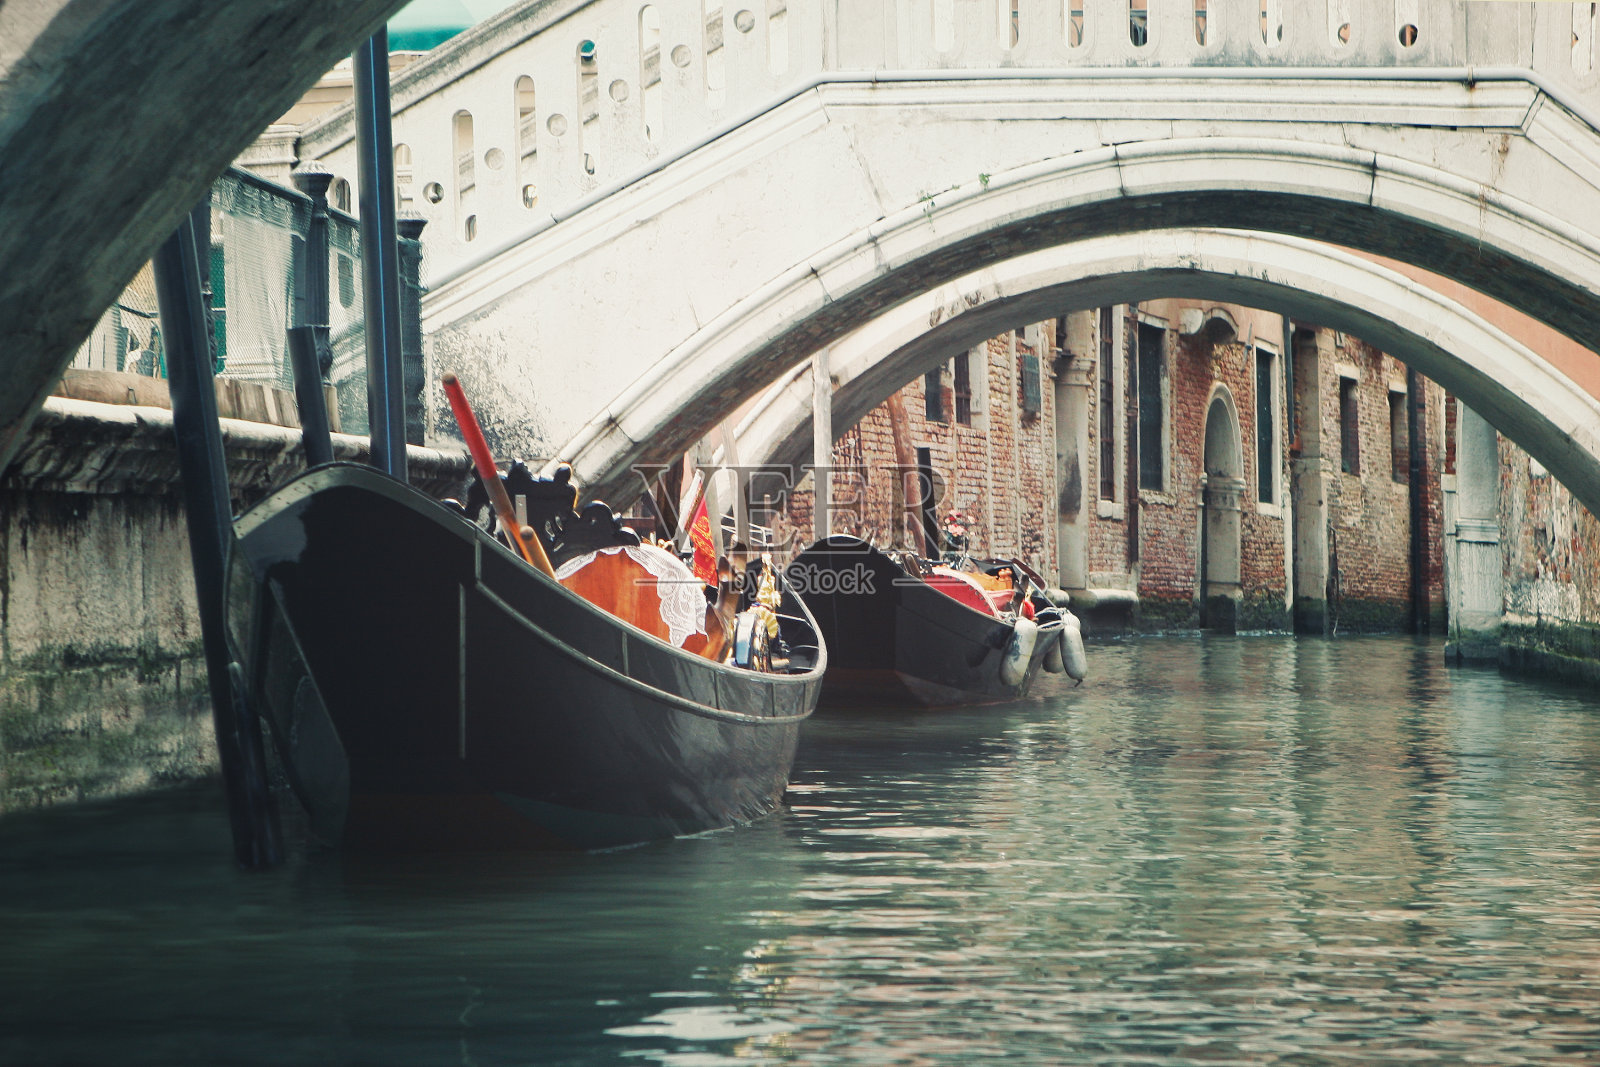 威尼斯威尼斯威尼斯威尼斯威尼斯威尼斯威尼斯复古平底船意大利照片摄影图片